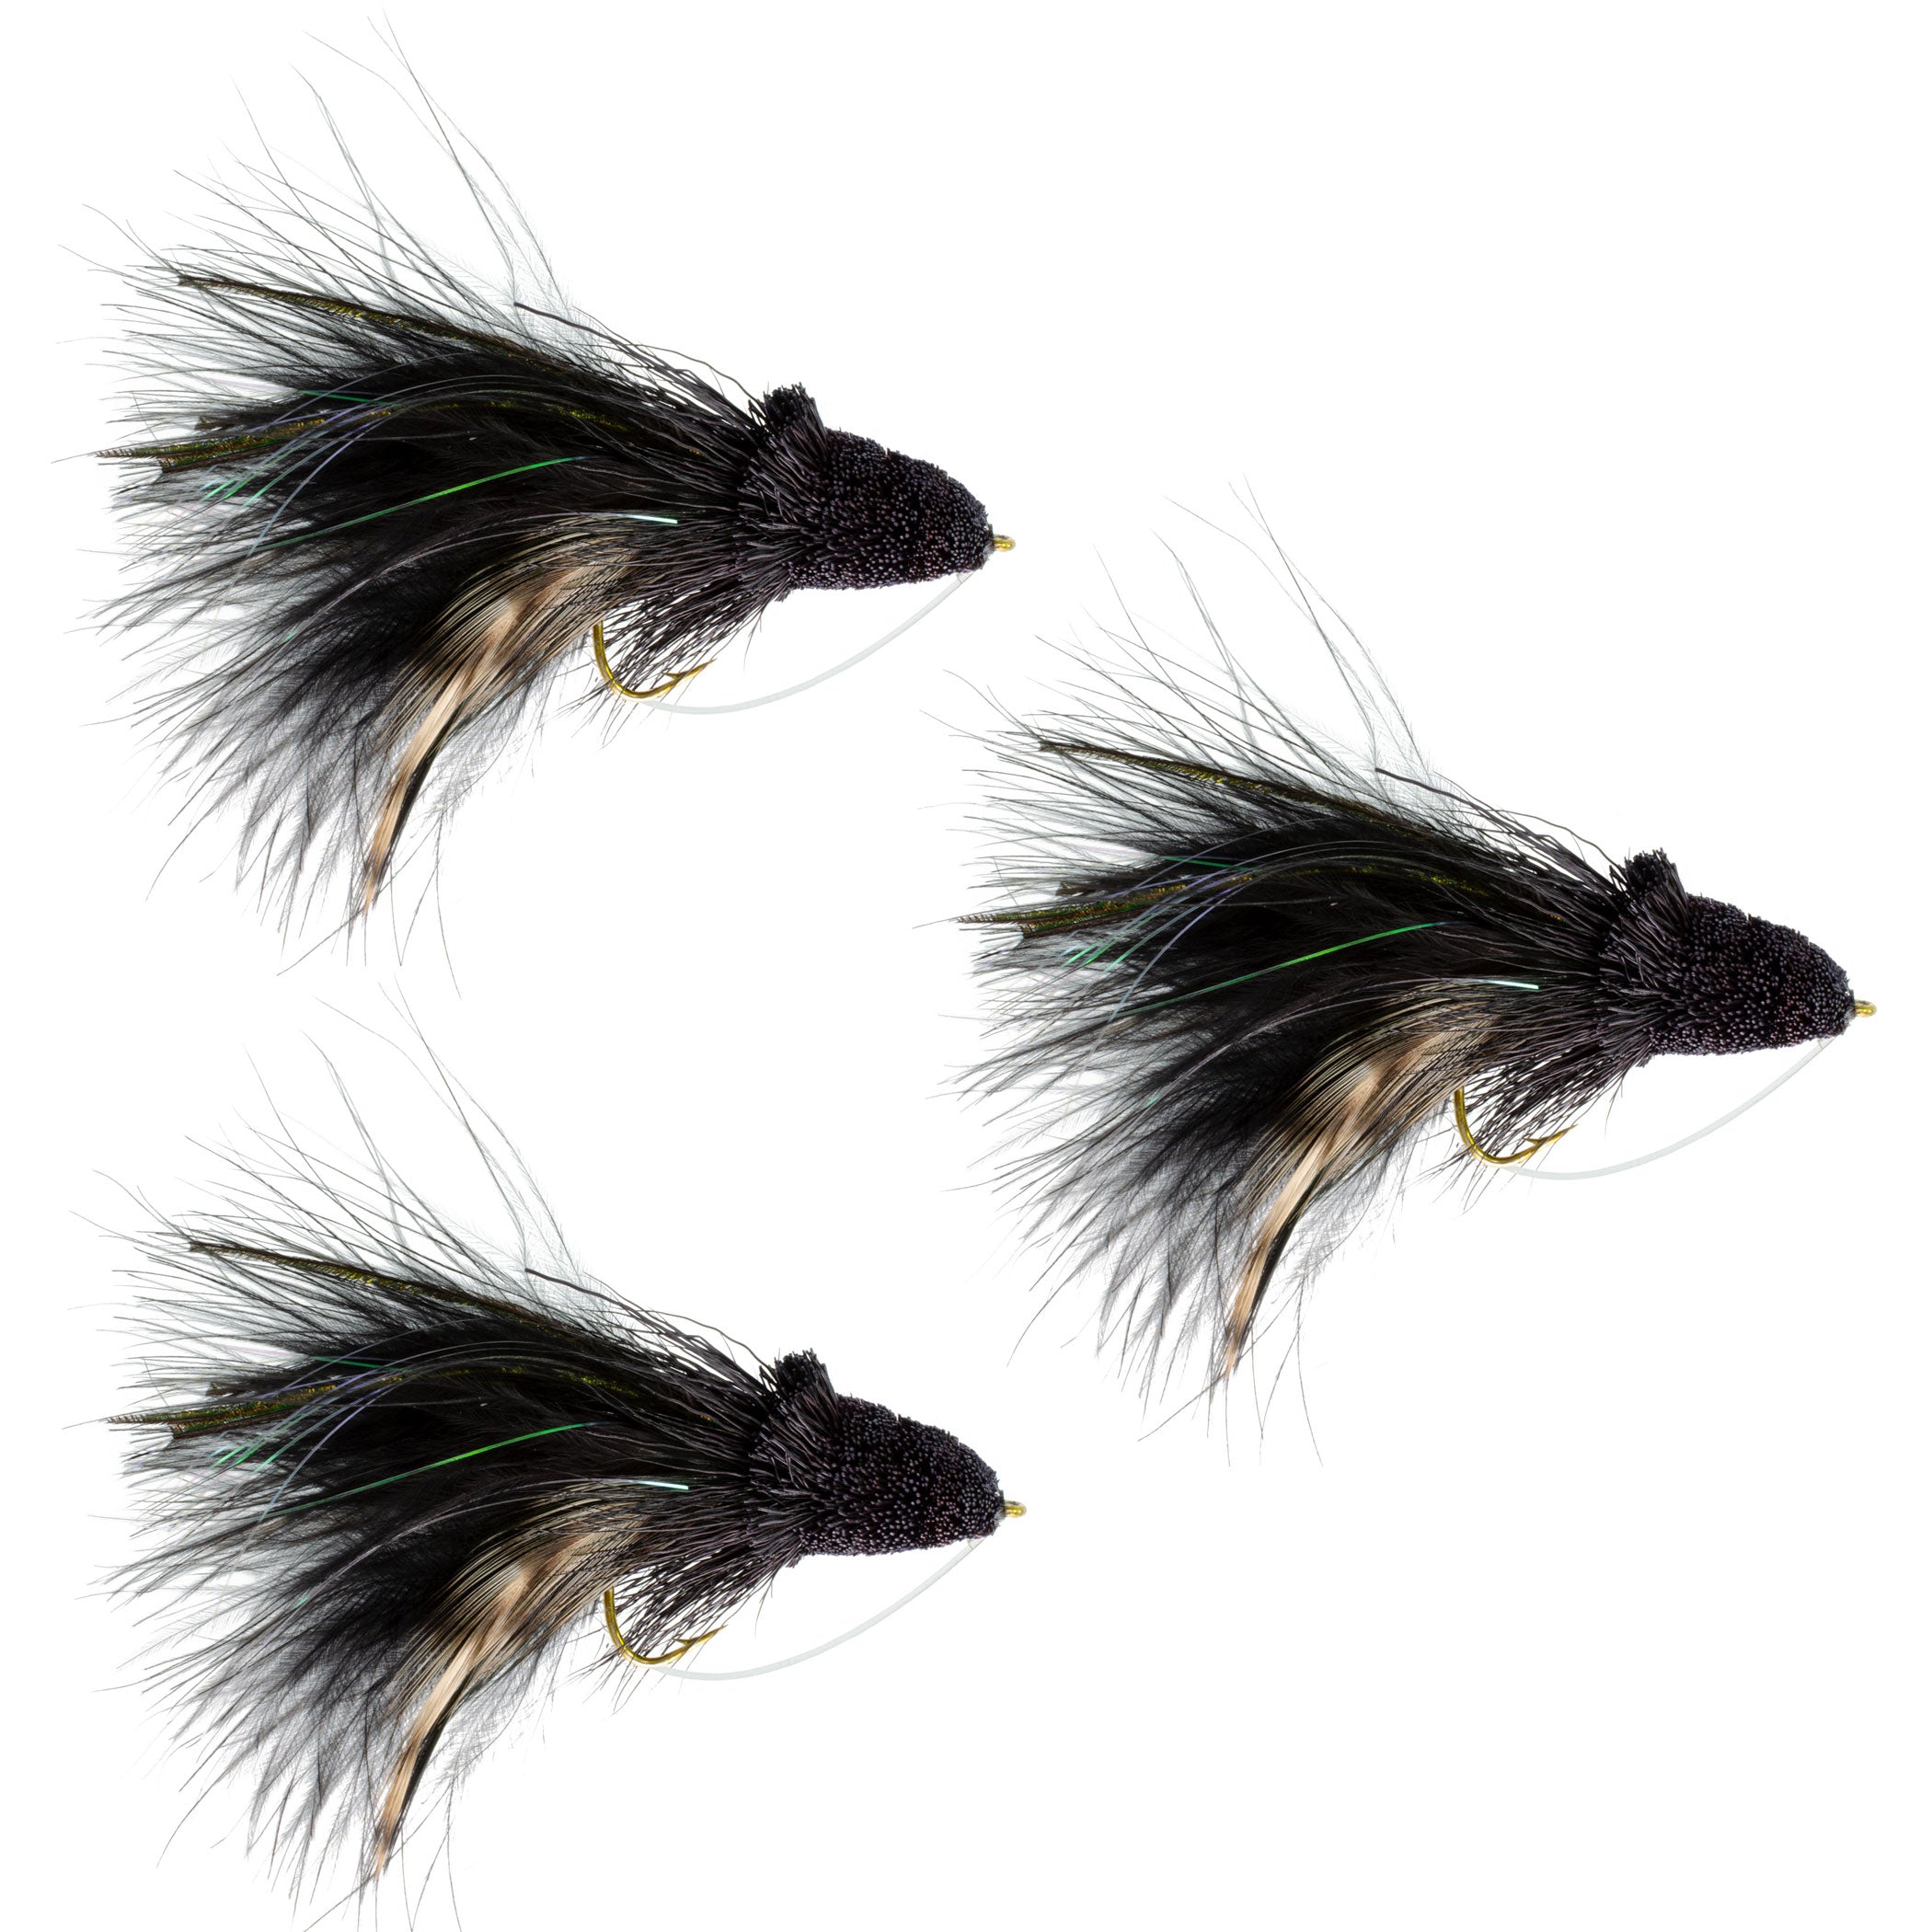 Paquete de 3 anzuelos para pesca con mosca Dahlberg, color negro, tamaño 4, con protección contra malas hierbas